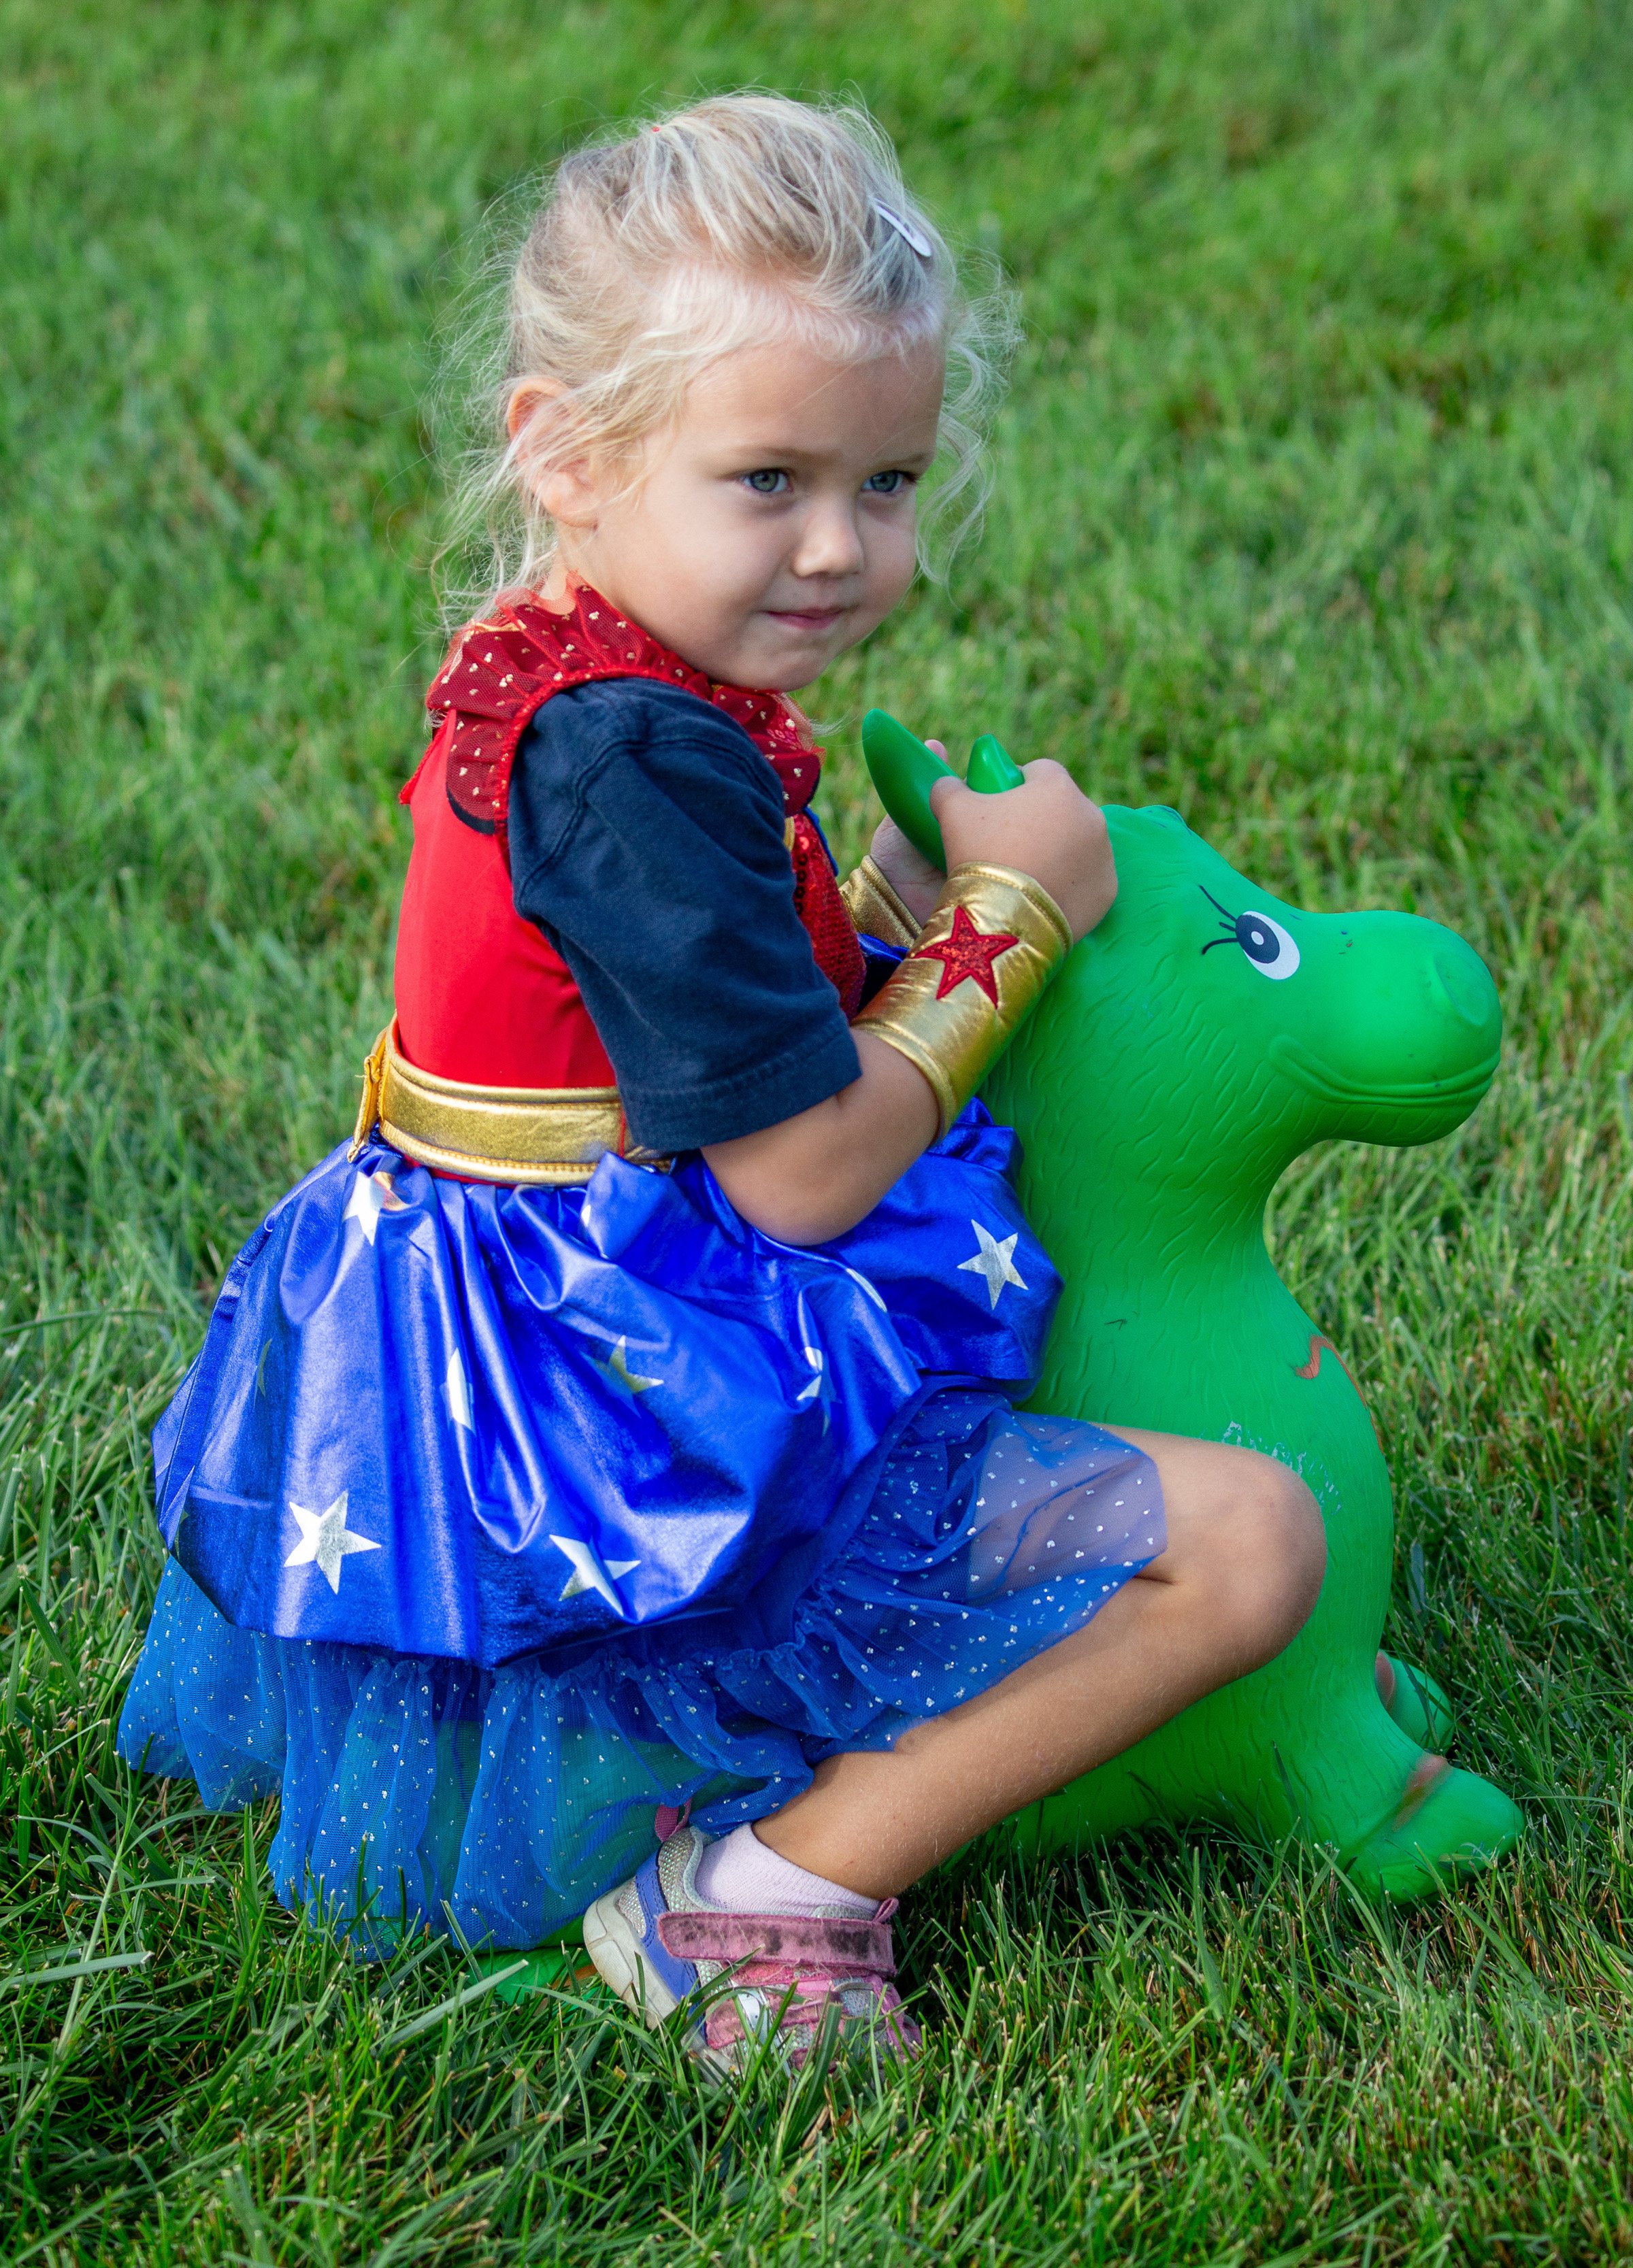 Little Wonder Girl Rides Bouncy Donkey.jpg